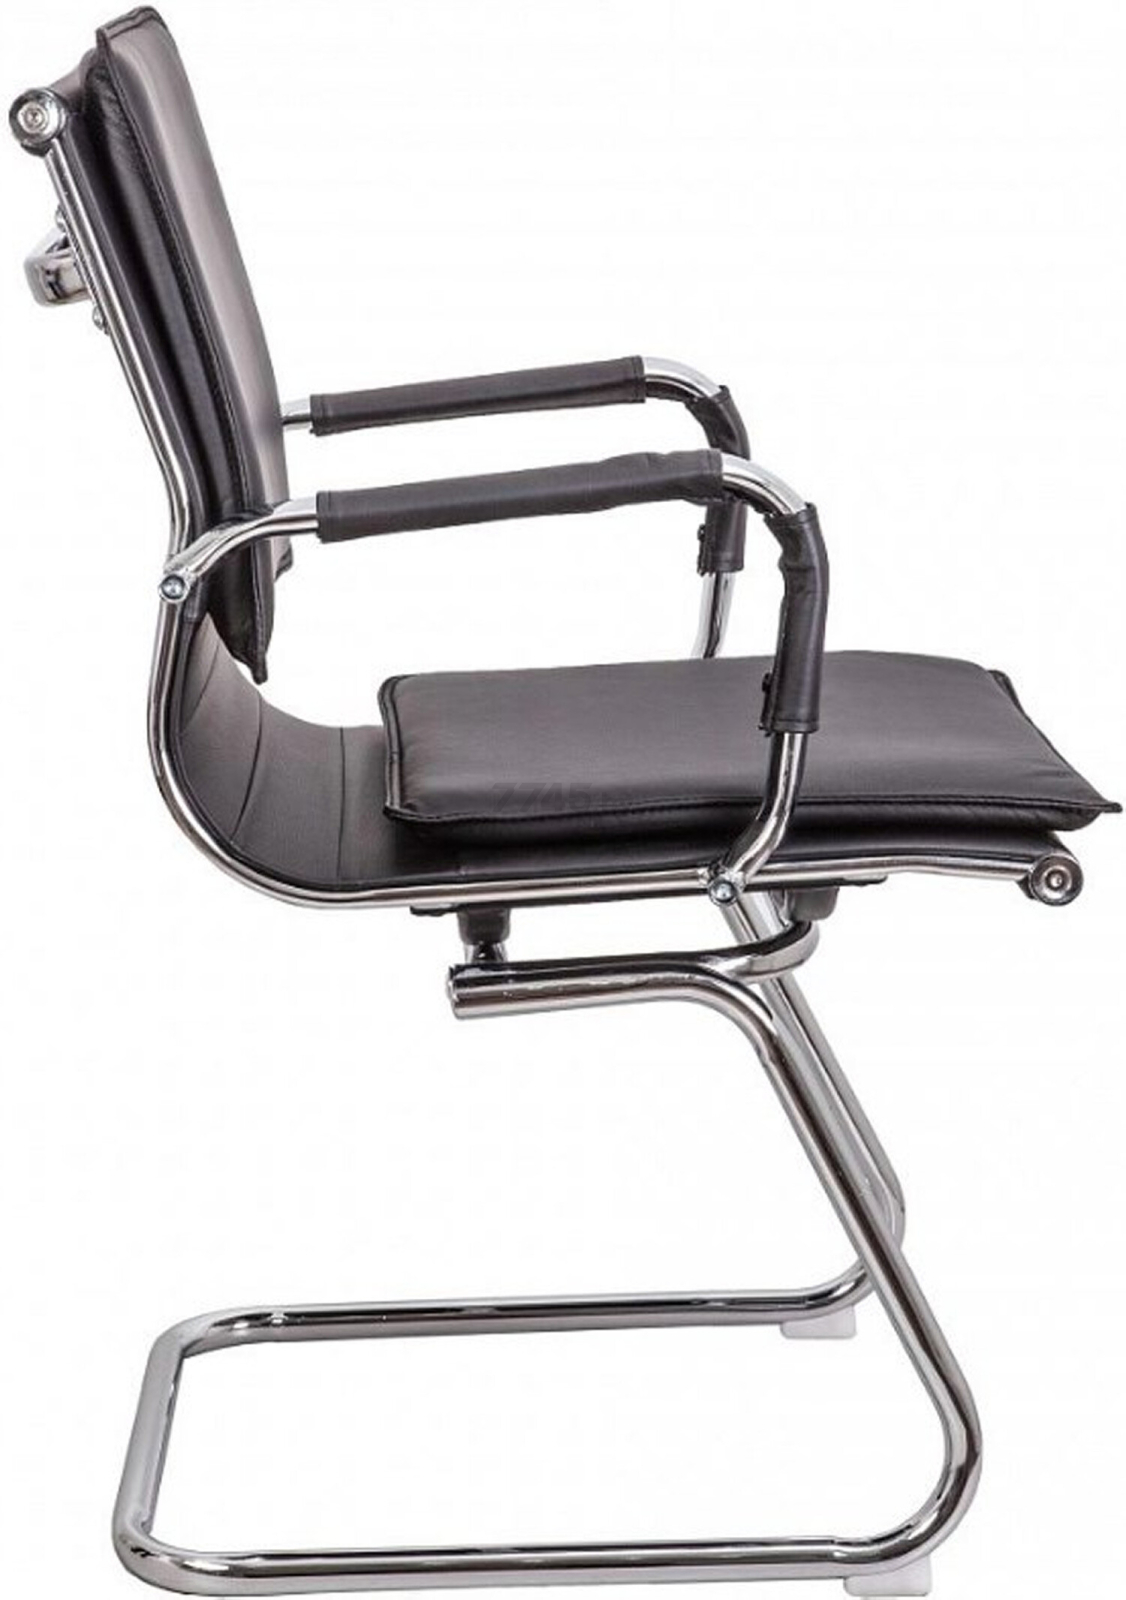 Кресло офисное AKSHOME Soti New черный (70026) - Фото 3